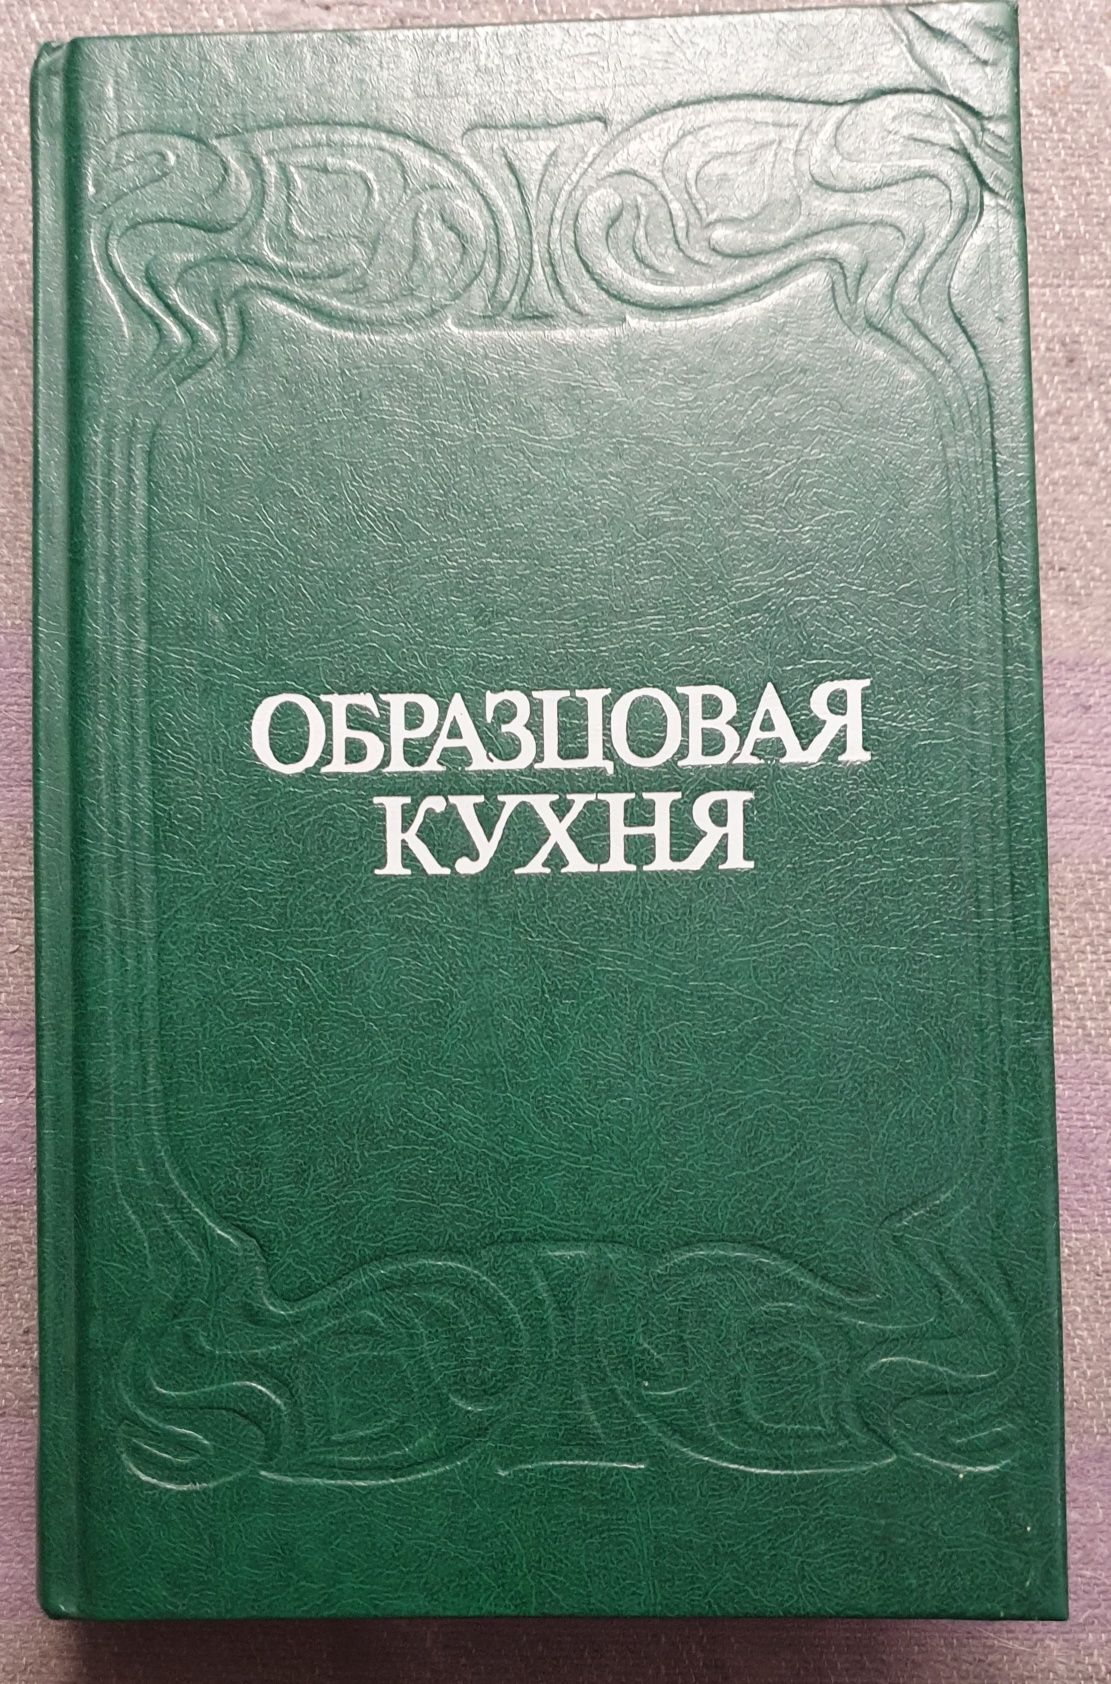 Книга Образцовая кухня.